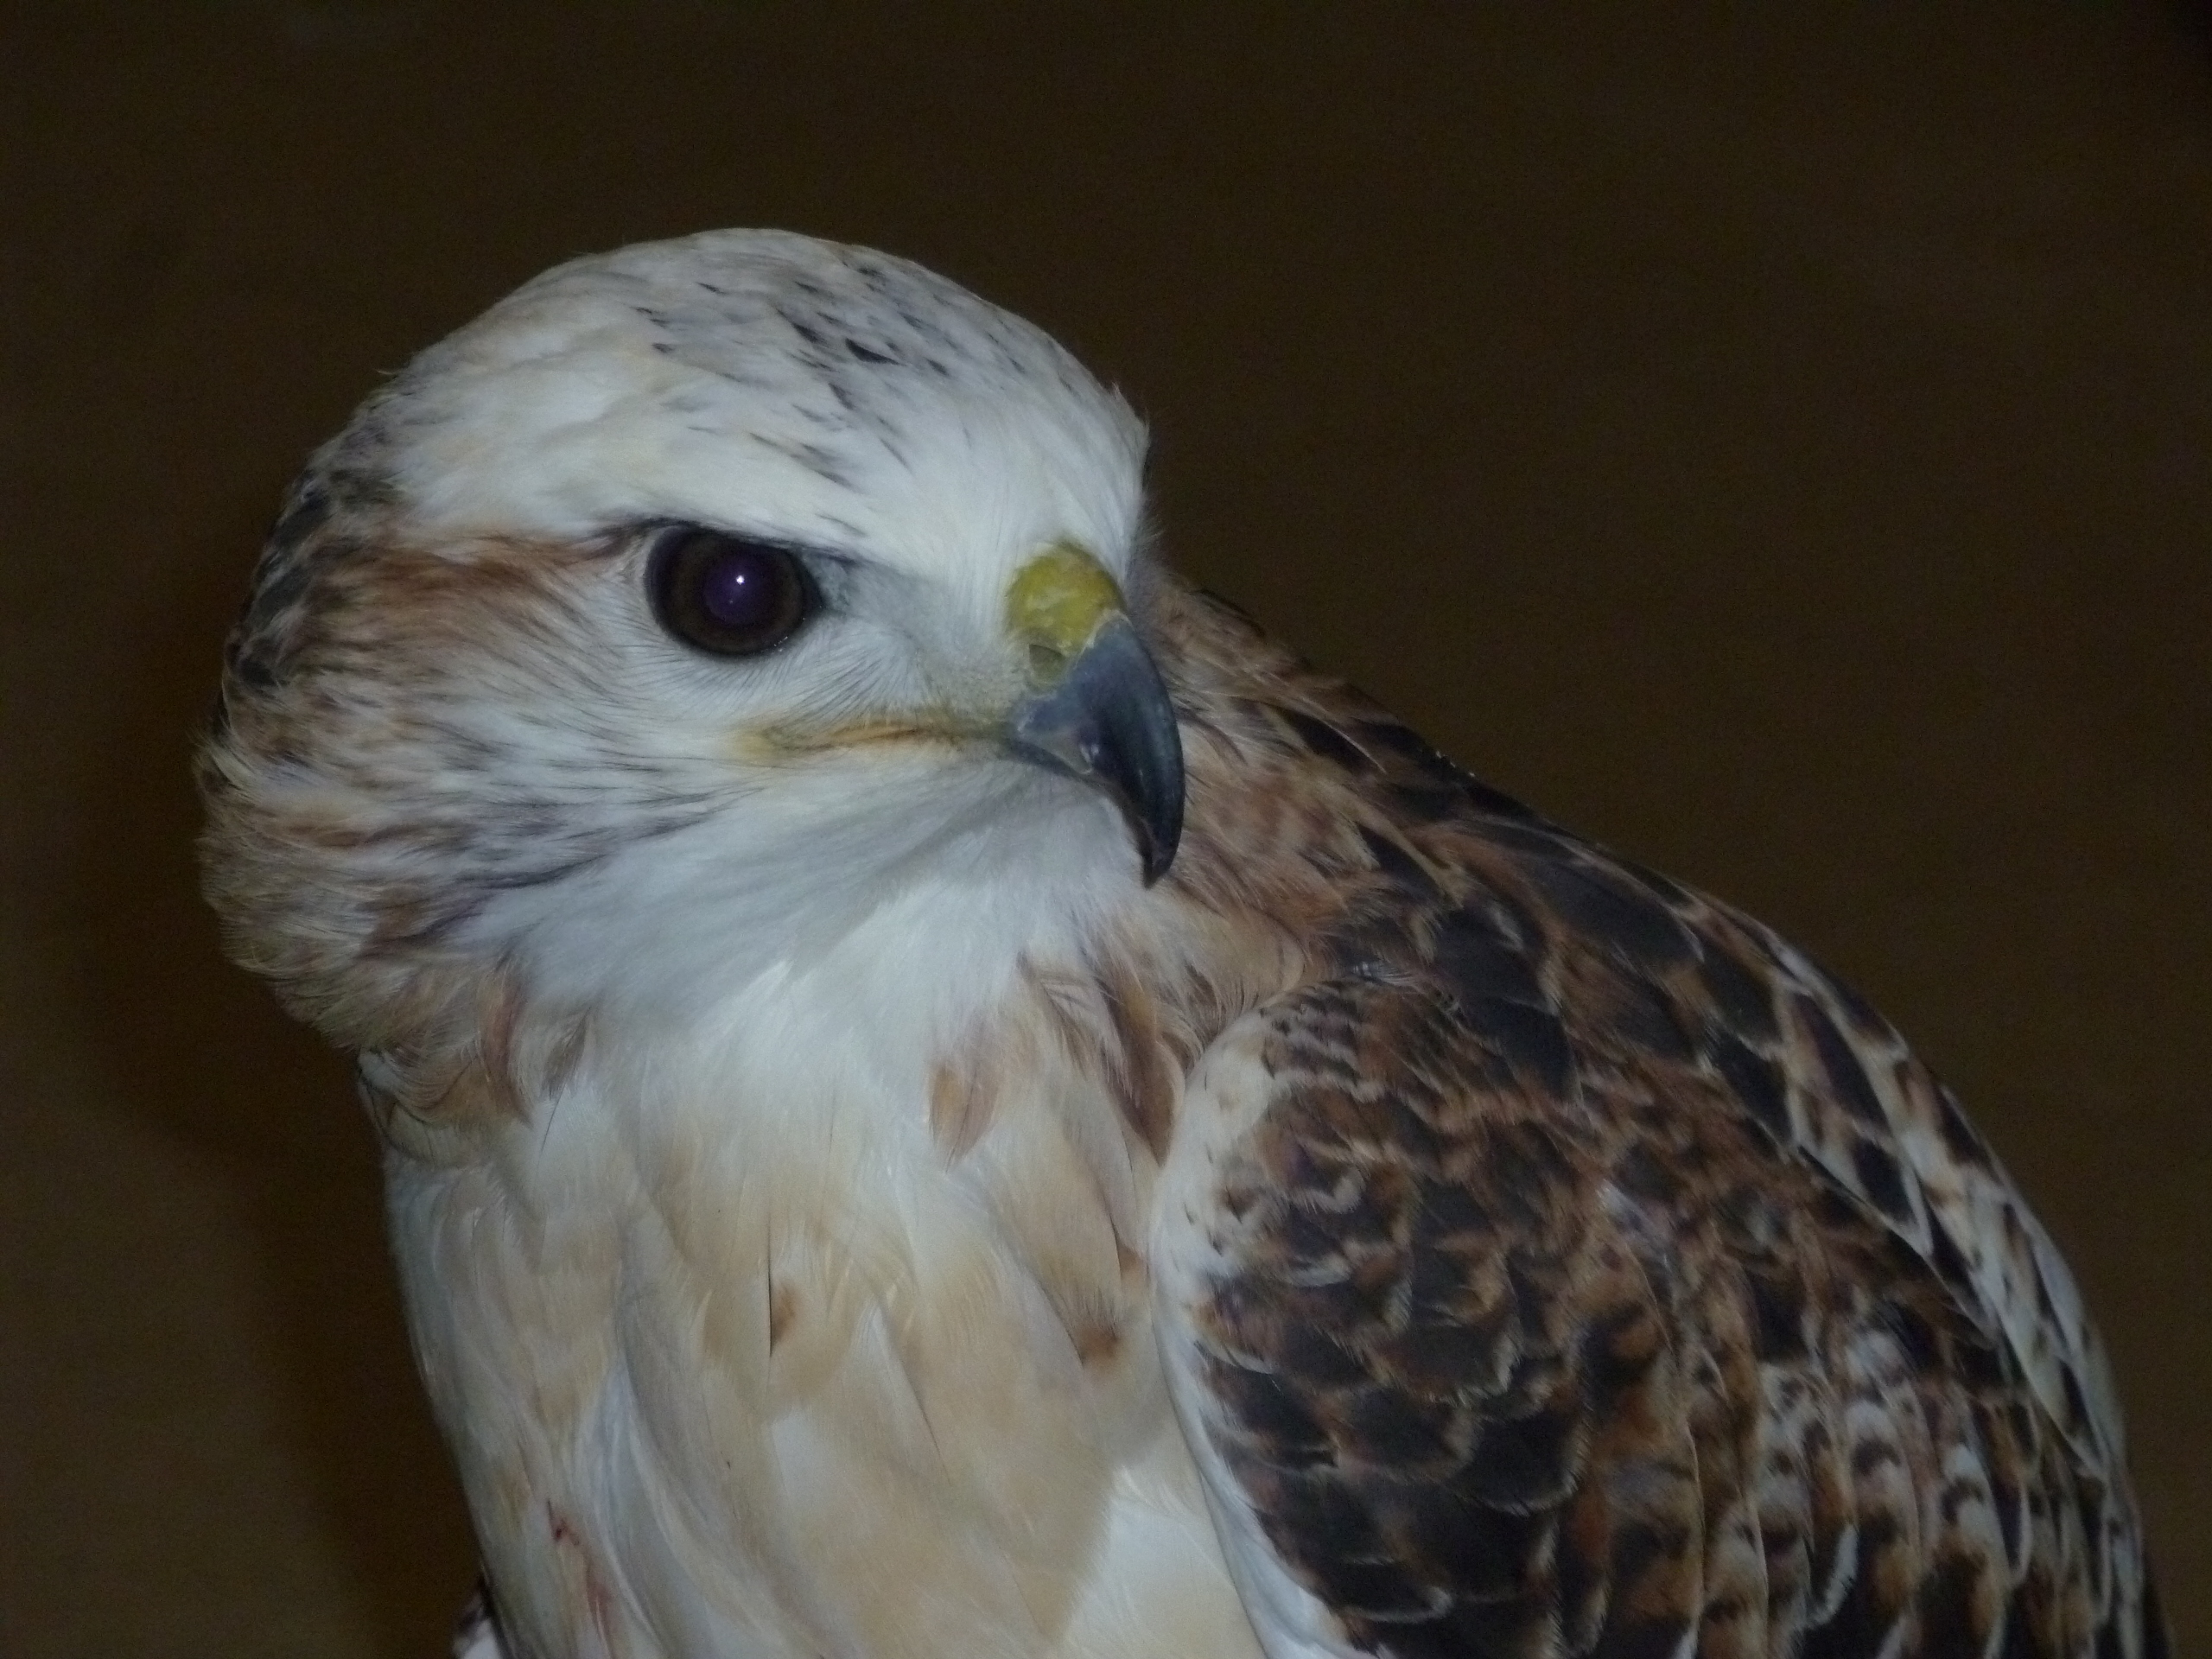 Casper, a red-tailed hawk